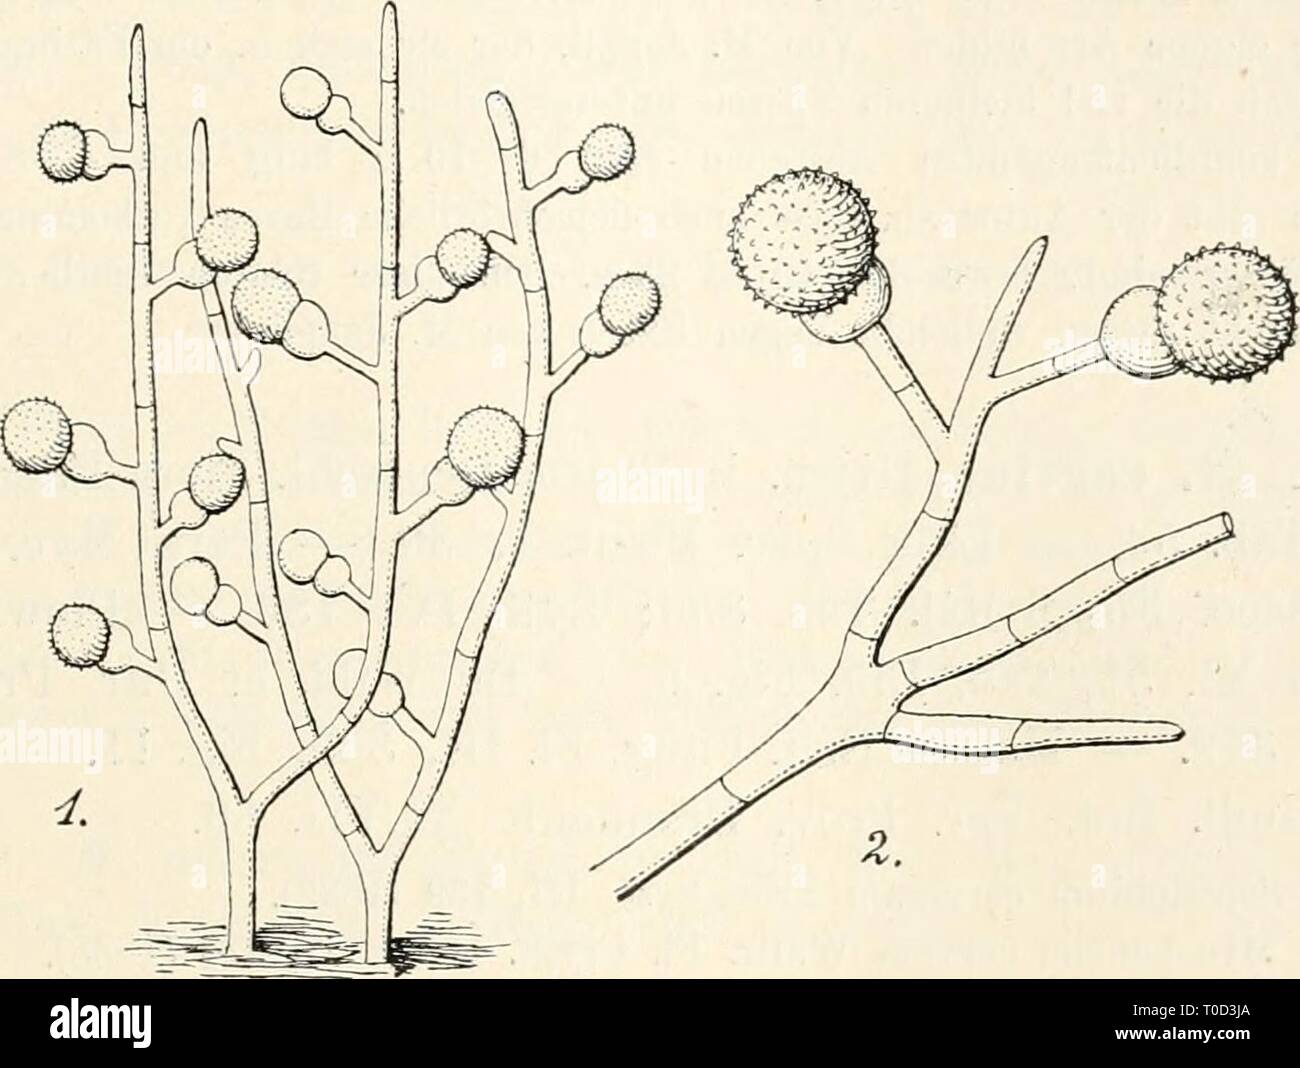 Dr L Rabenhorst's Kryptogamen-Flora von Dr. L. Rabenhorst's Kryptogamen-Flora von Deutschland, Oesterreich und der Schweiz drlrabenhorstskr0108rabe Year: 1907  385 Syn. Puccinia mycogone Corda Icon. Fung. I, 6 (1837), Fig. 99. Exs. Sacc. Myc. venet. 578; Klotzscb Herb. myc. 686; Fuckel Fungi rhen. 142; Kouraeguere Fungi gall. 3191, 3794; D. Sacc. Myc. ital. 579. Rasen ausgebreitet, sammetartig, rosarot, aus hyalinen, verzweigten, septierten Hyphen verwebt. Konidientragende Hyphen als kurze, einfache oder verzweigte Seitenzweige gebildet. Konidien end-    1. Mycogone rosea Link. Konidientragend Stock Photo